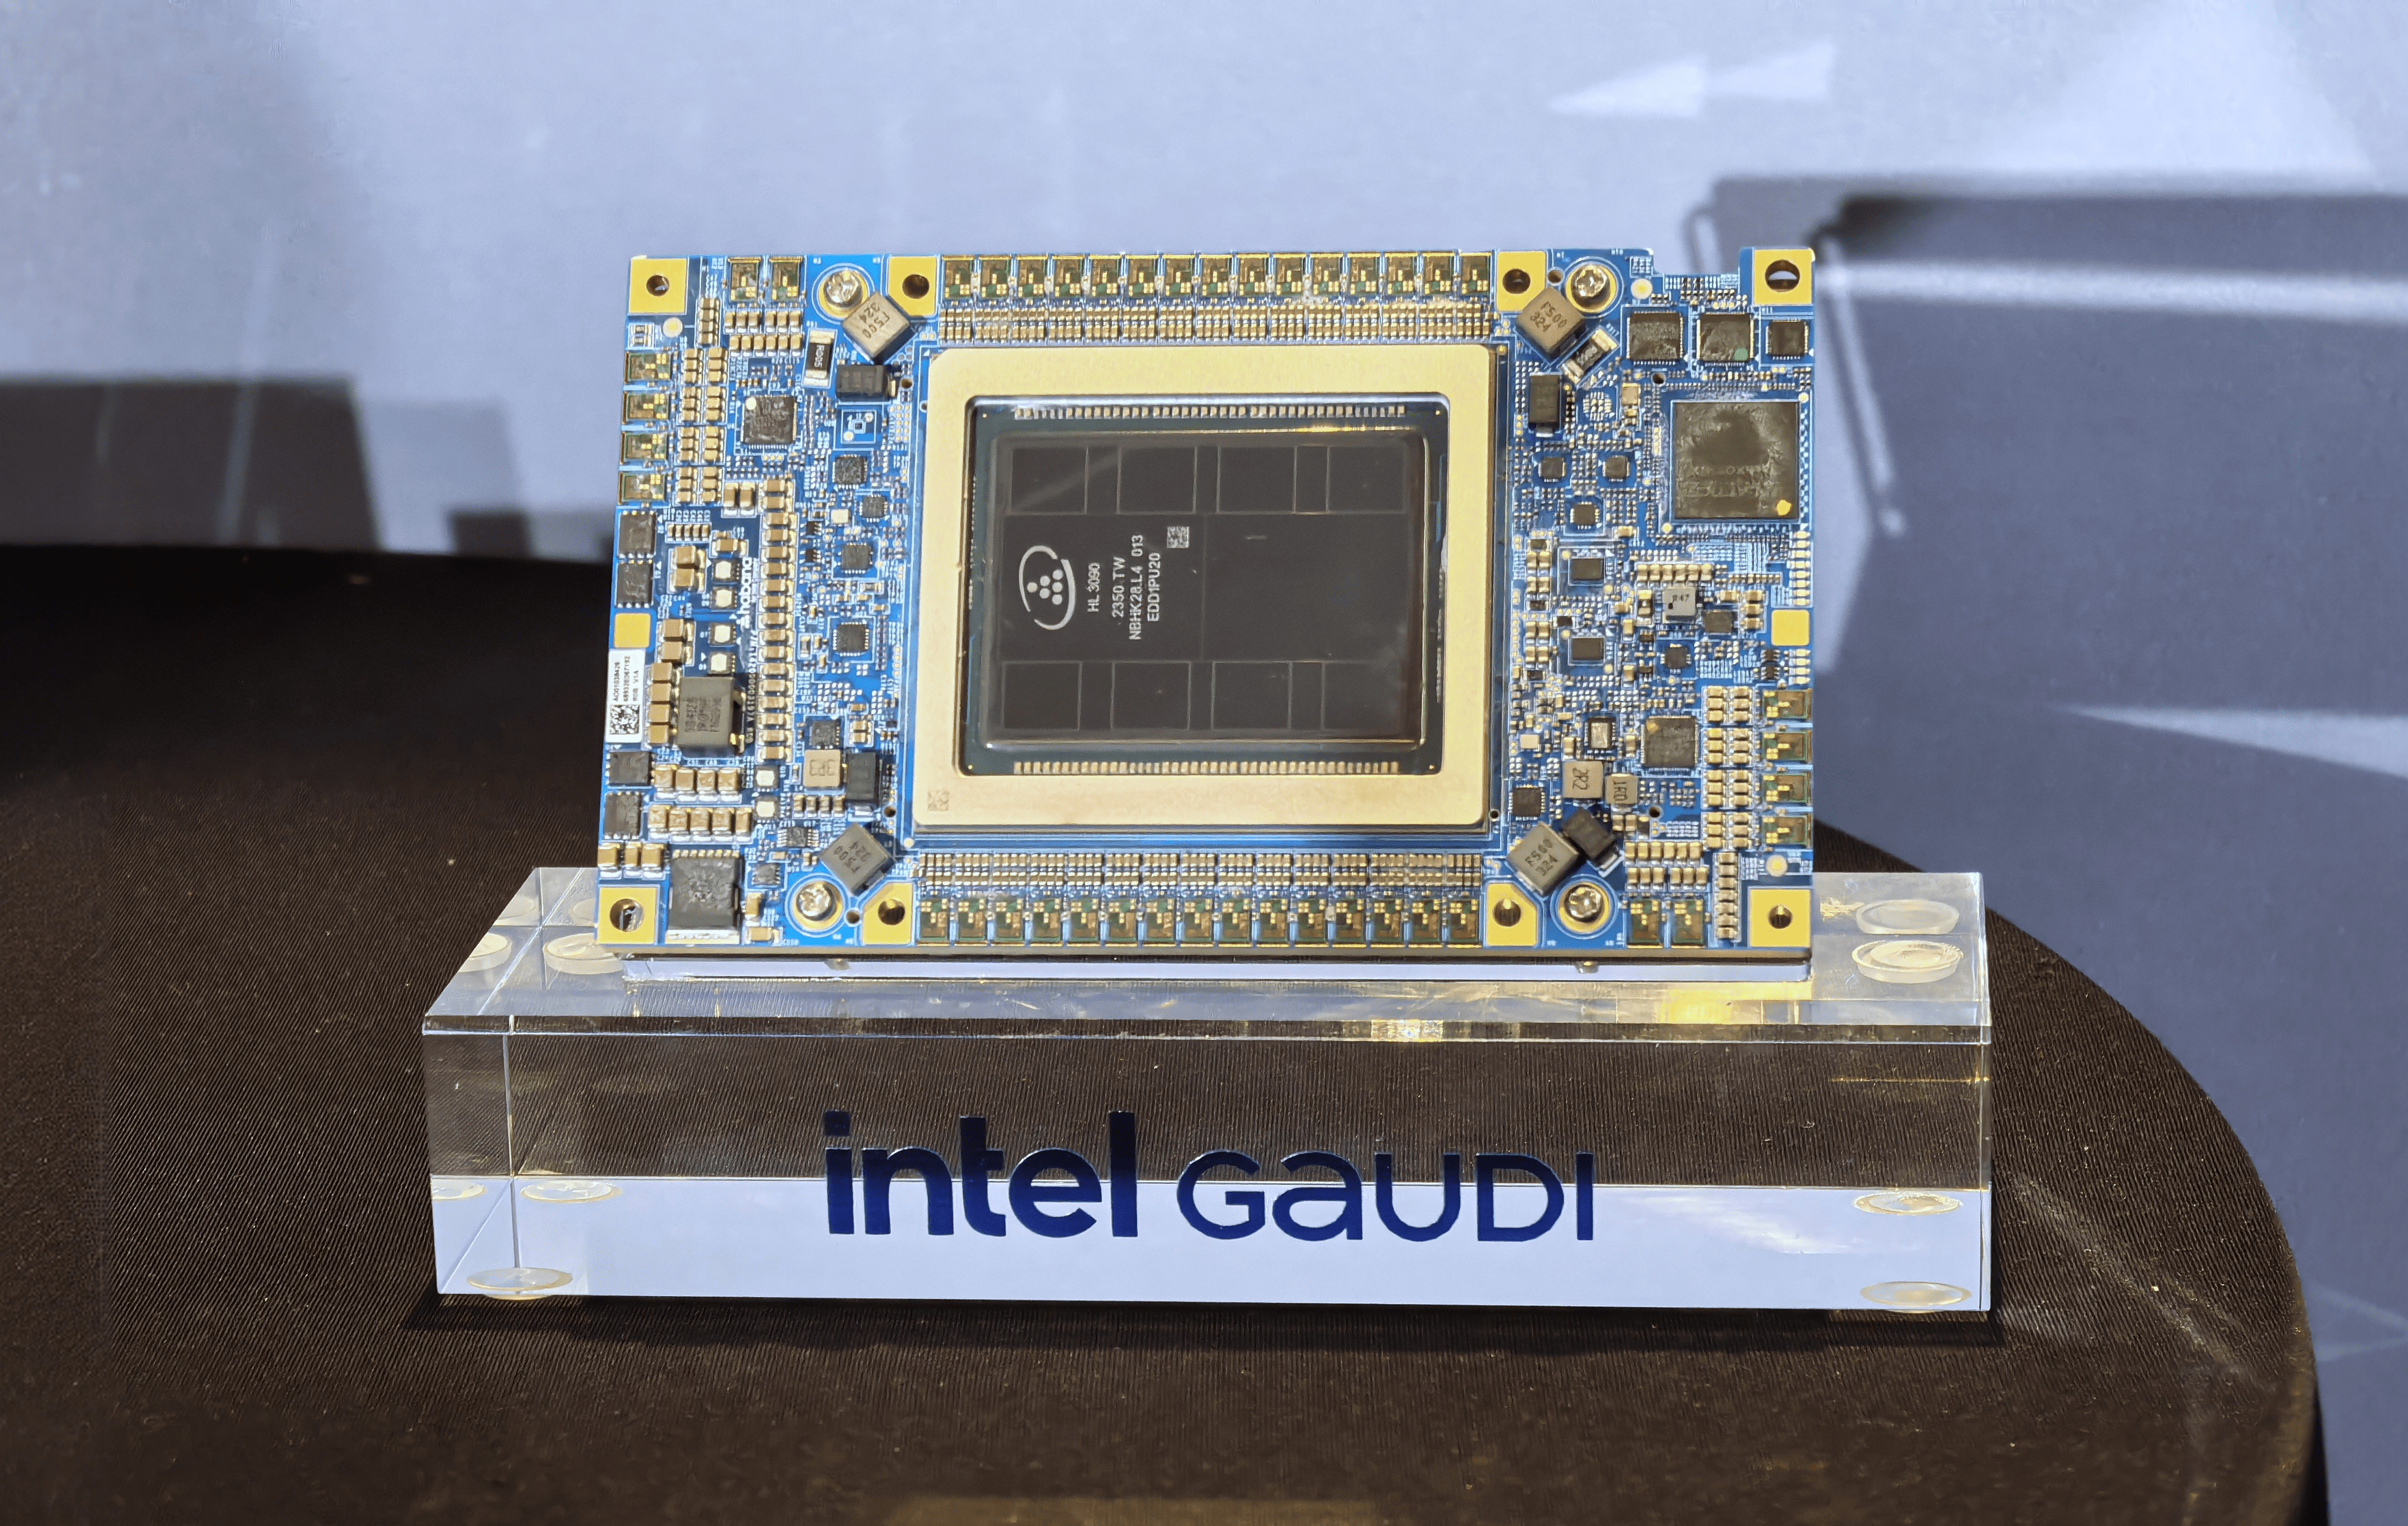 Układ scalony Intel Gaudi umieszczony na przezroczystej podstawce z nazwą "intel GAUDI".